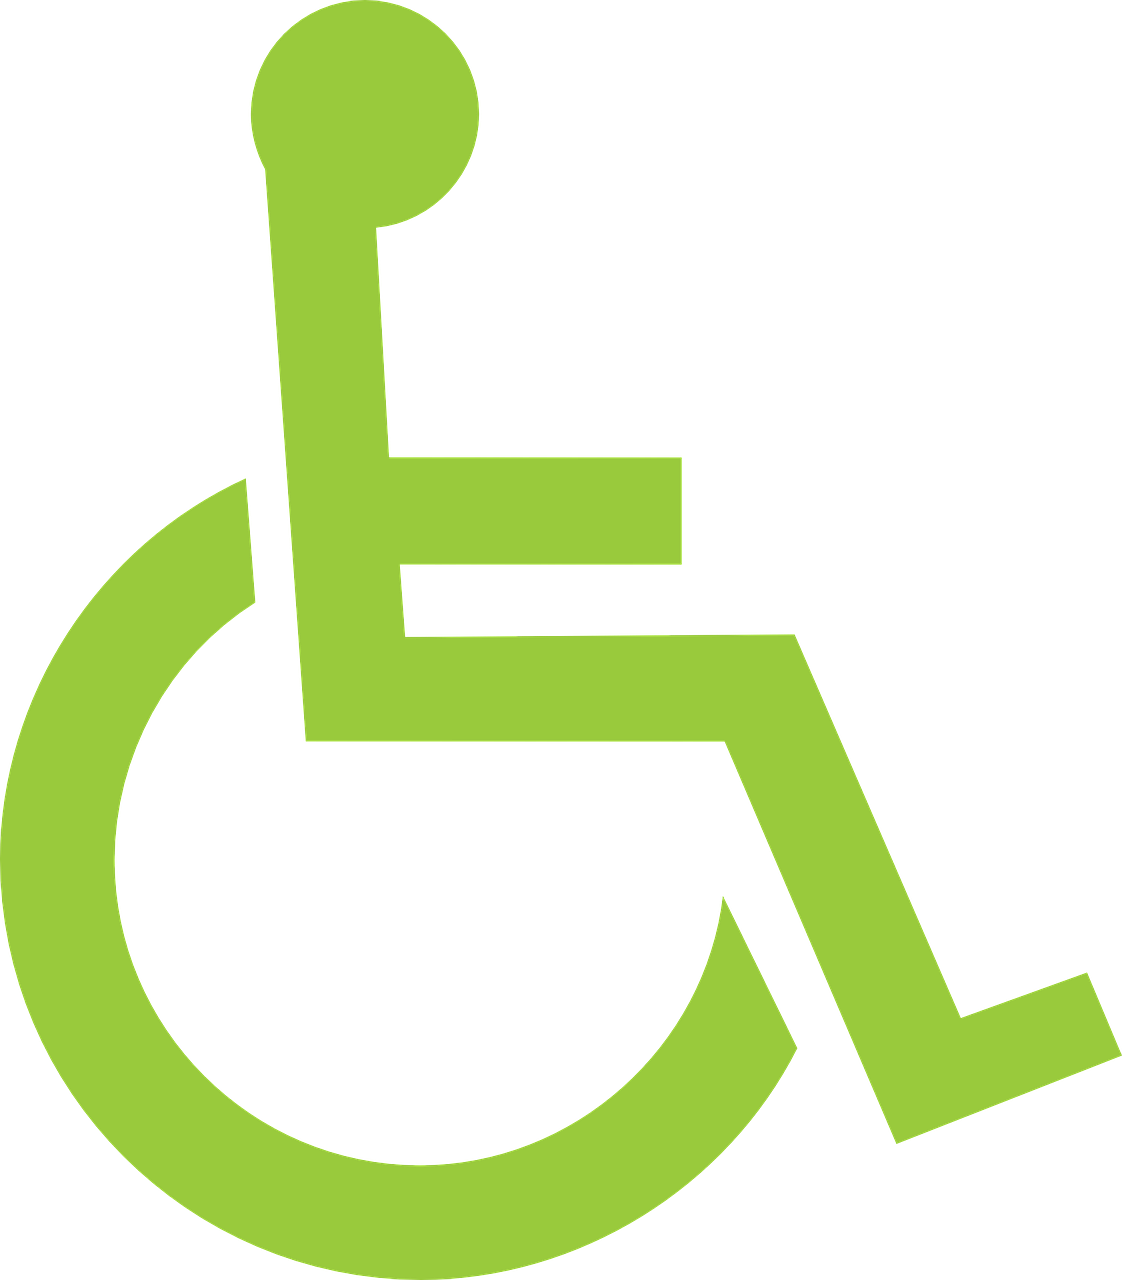 Stichting Sprank locatie Stavoren groep Glans ervaring instelling gehandicaptenzorg verstandelijk gehandicapten